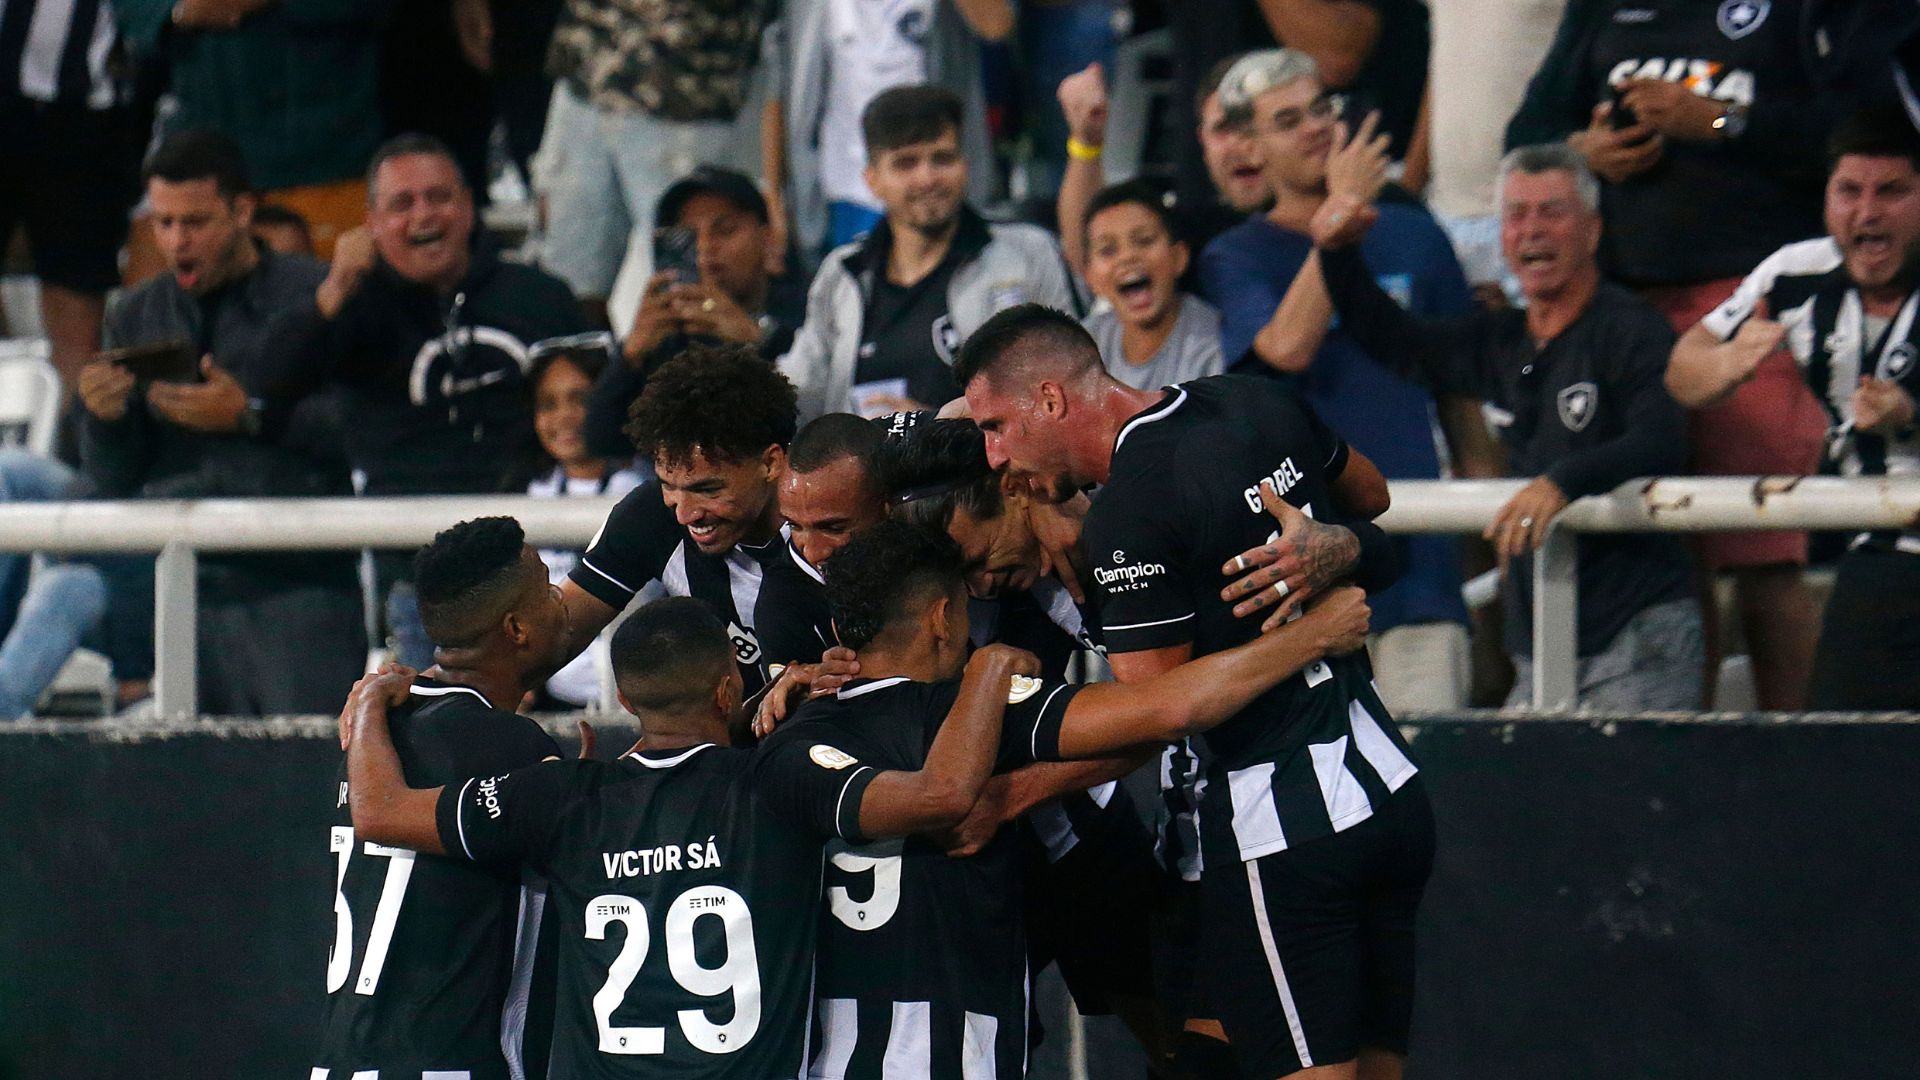 Equipe do Botafogo comemorando o gol de Cuesta, que abriu o placar